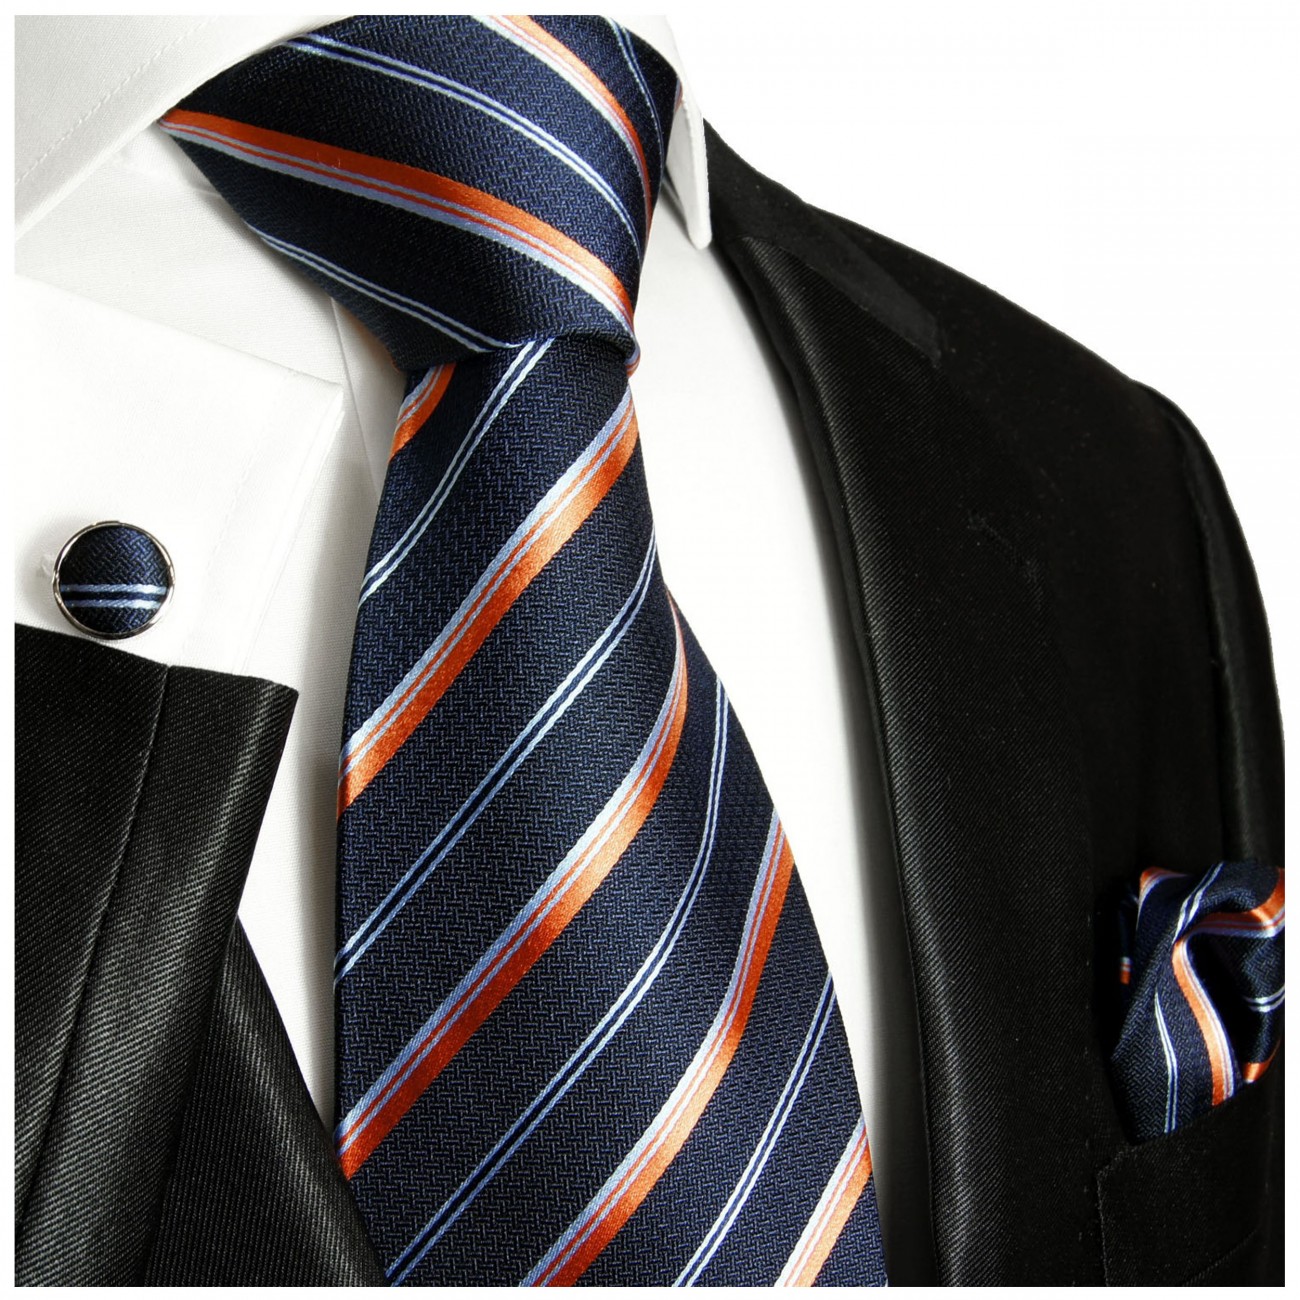 Extra lange Krawatte 165cm - Krawatte Überlänge - blau orange gestreift